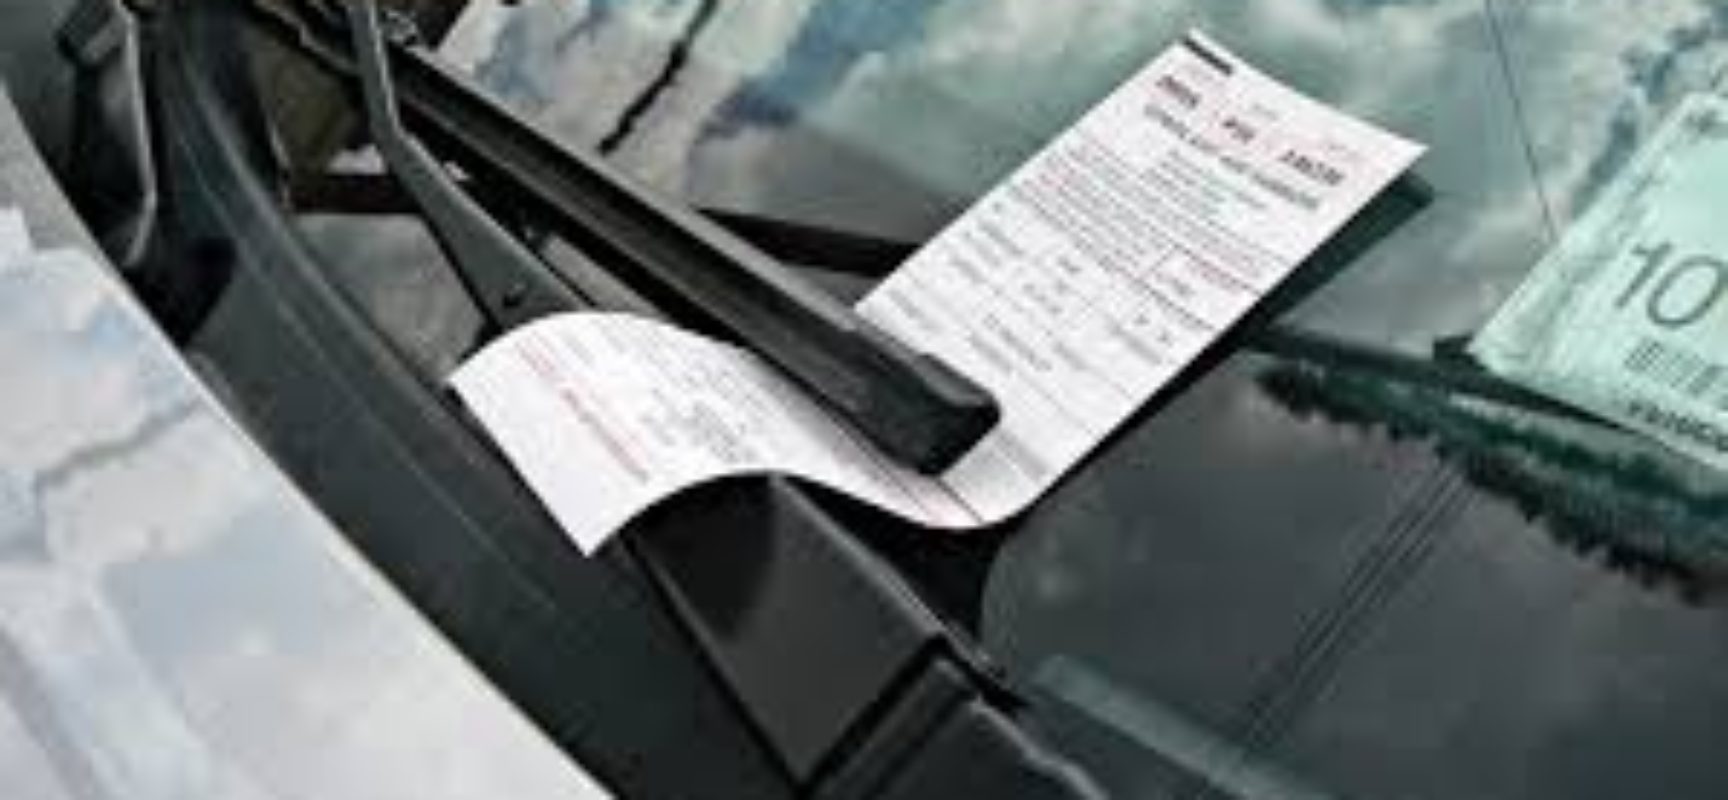 Proposta prevê o parcelamento das multas de trânsito em até 12 vezes